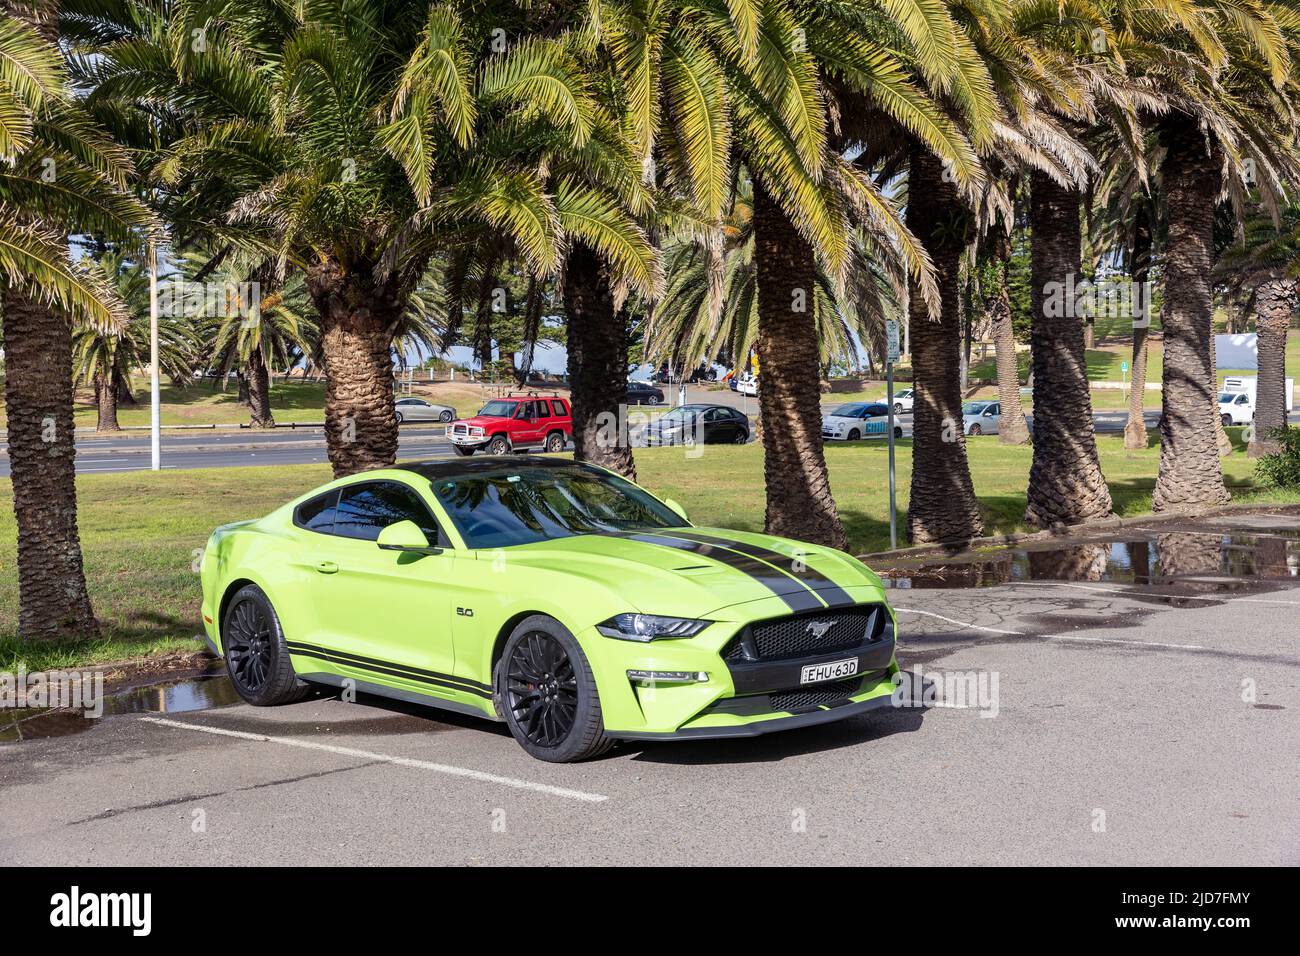 Voiture Ford Mustang 2020 en vert lime avec bandes noires sur le capot, Sydney, Nouvelle-Galles du Sud, Australie Banque D'Images